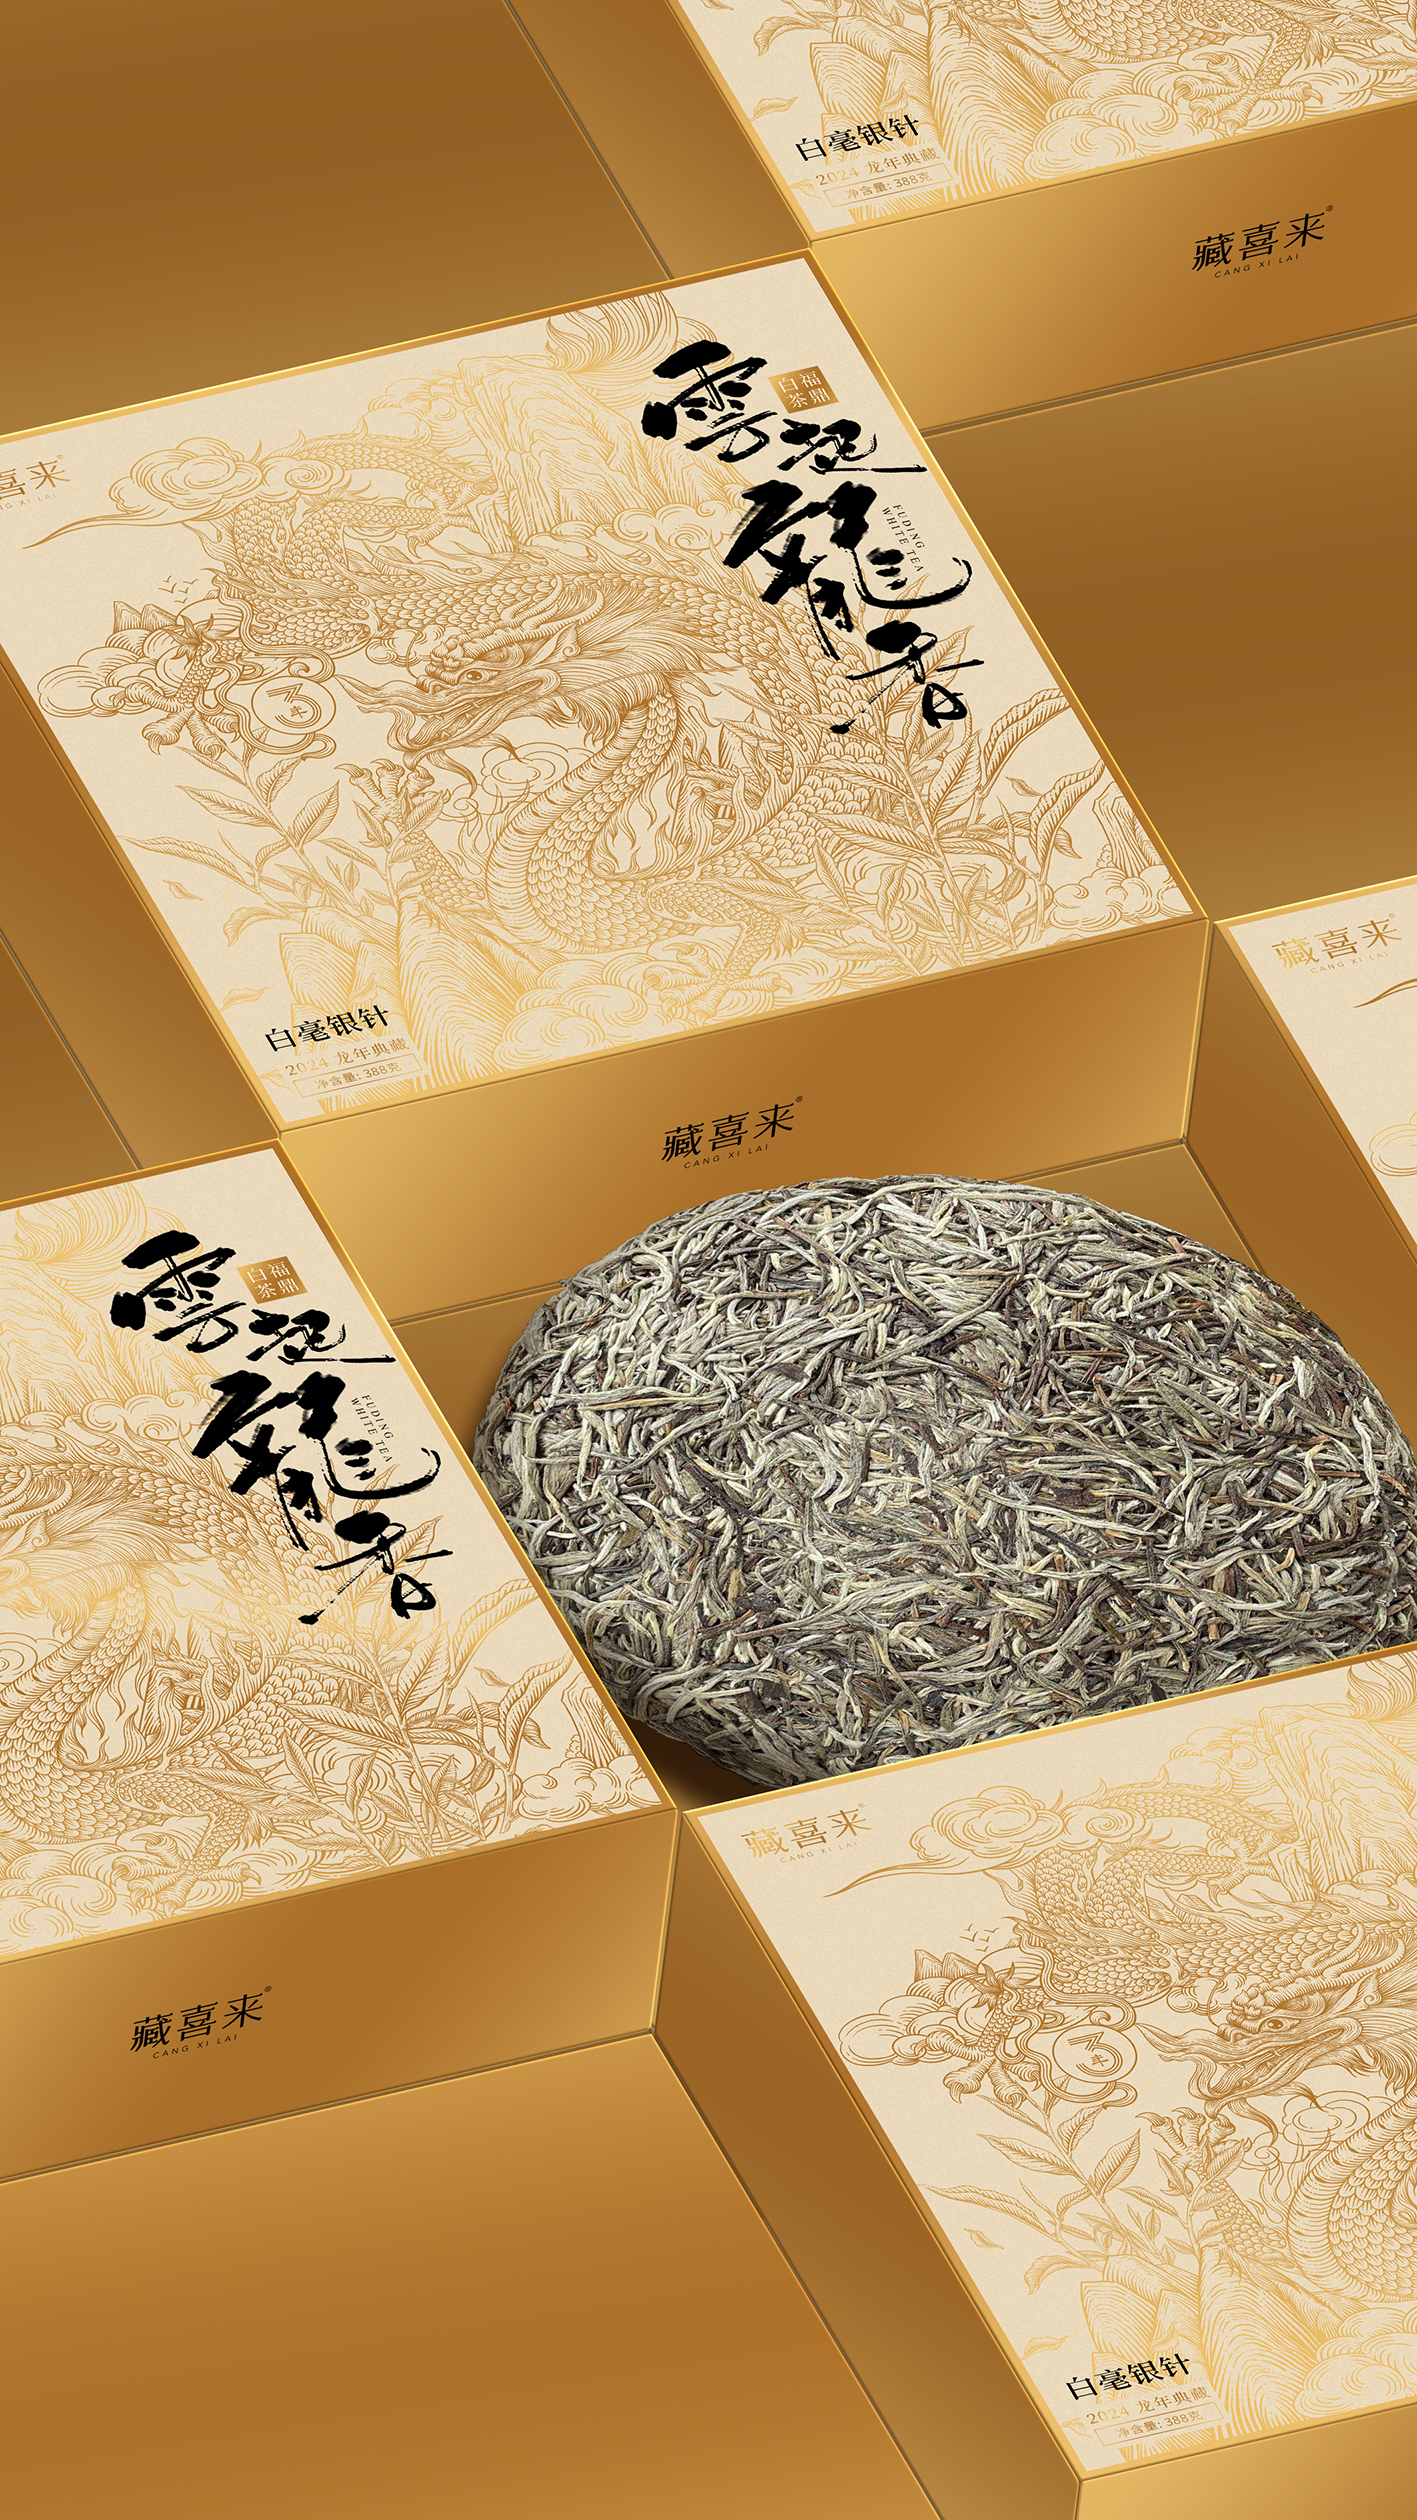 藏喜来白毫银针龙年茶礼包装设计 x 张晓宁(图1)